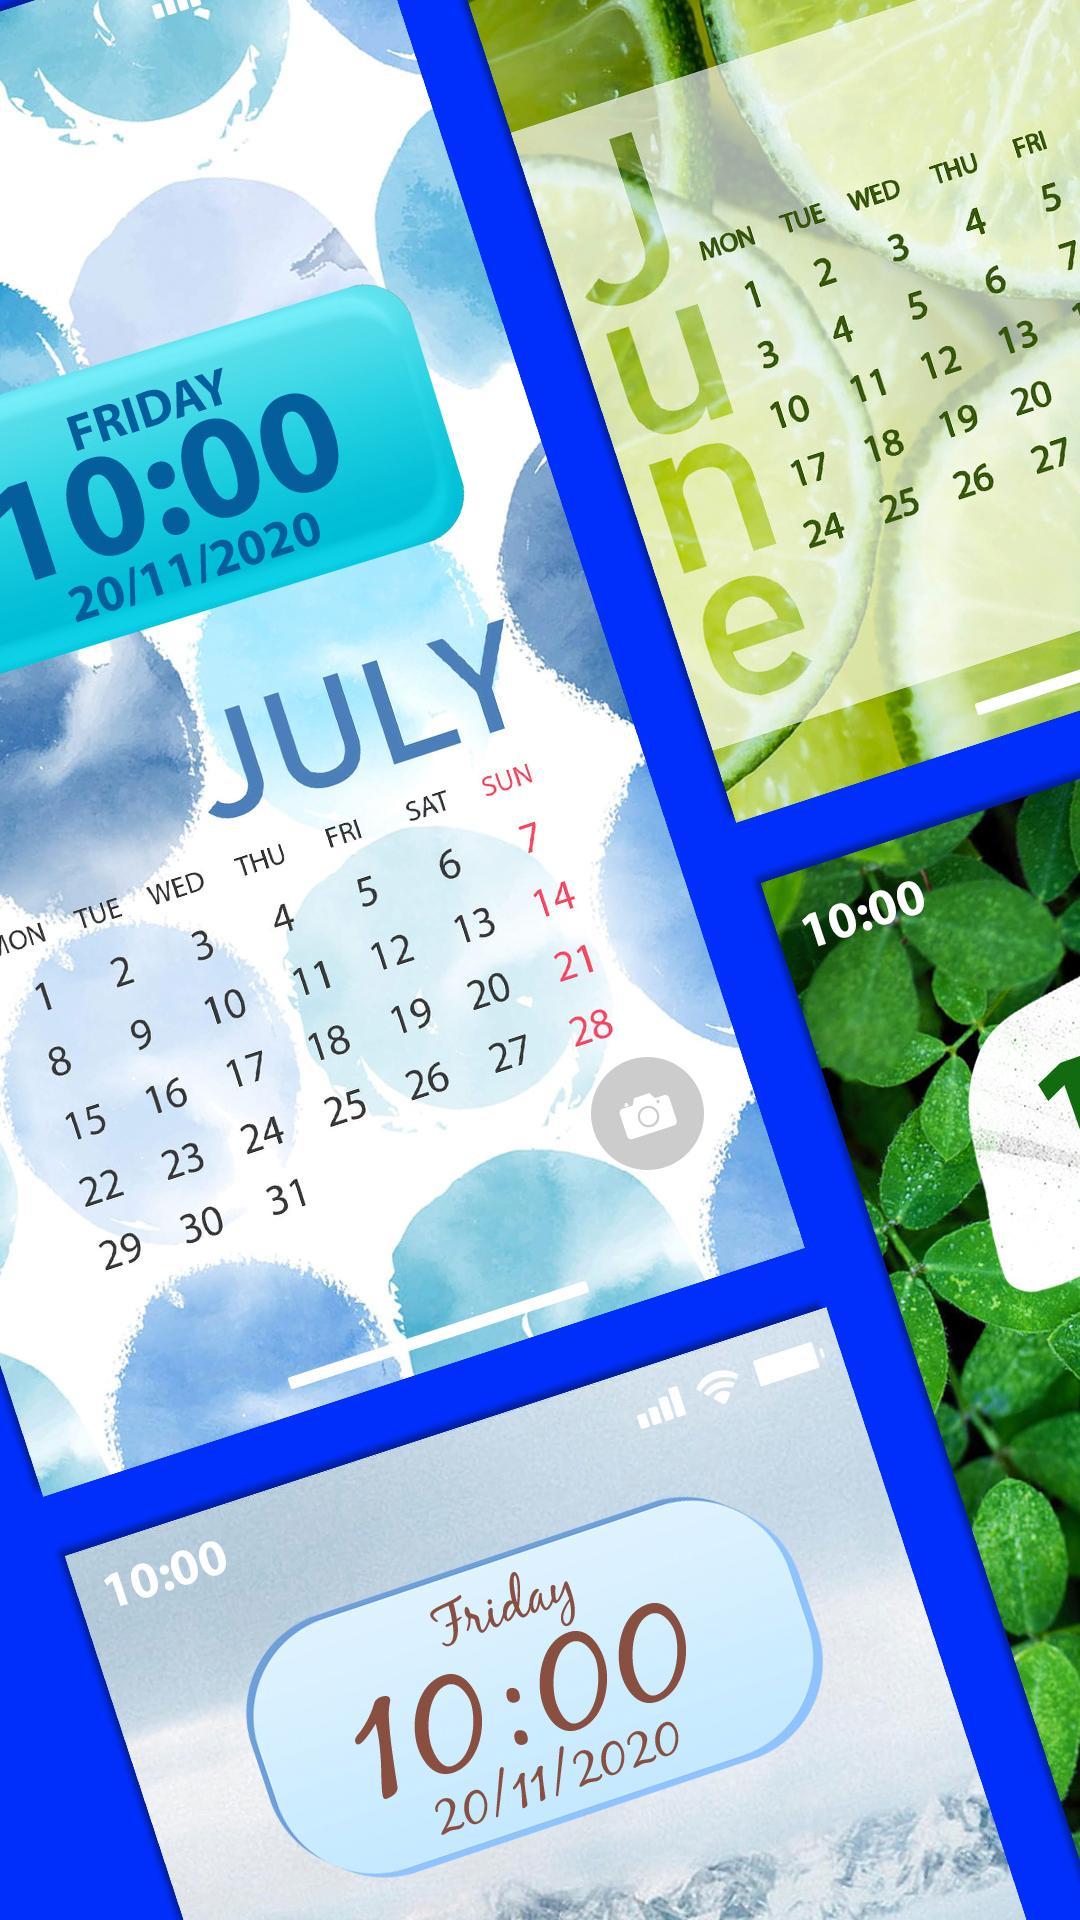 Android 用の カレンダー 背景壁紙 スマホ Apk をダウンロード